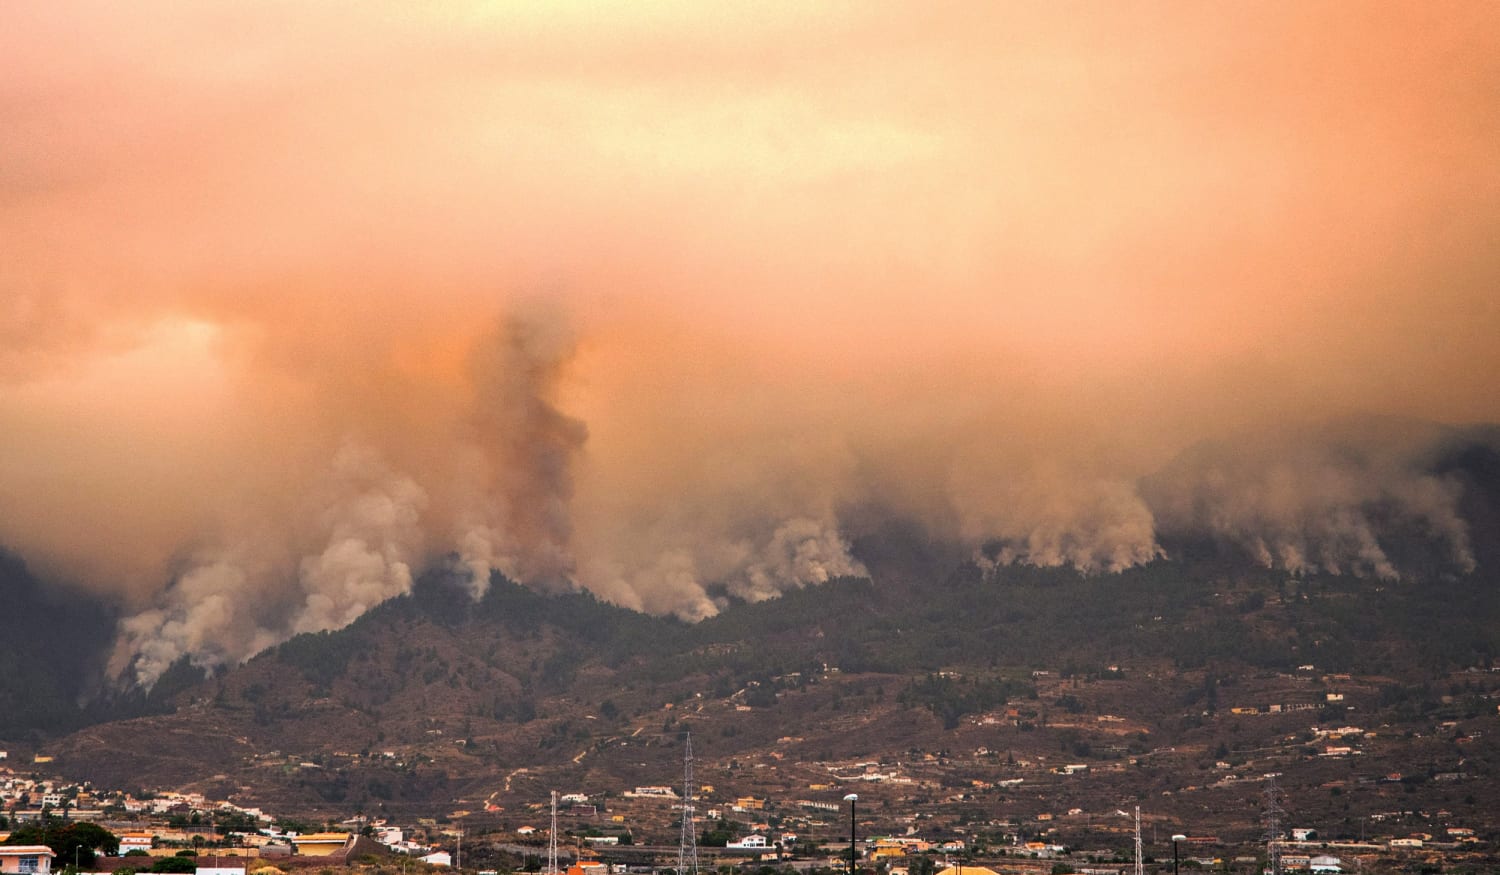 Incendios fuera de control están quemando la isla española de Tenerife, afectando a miles